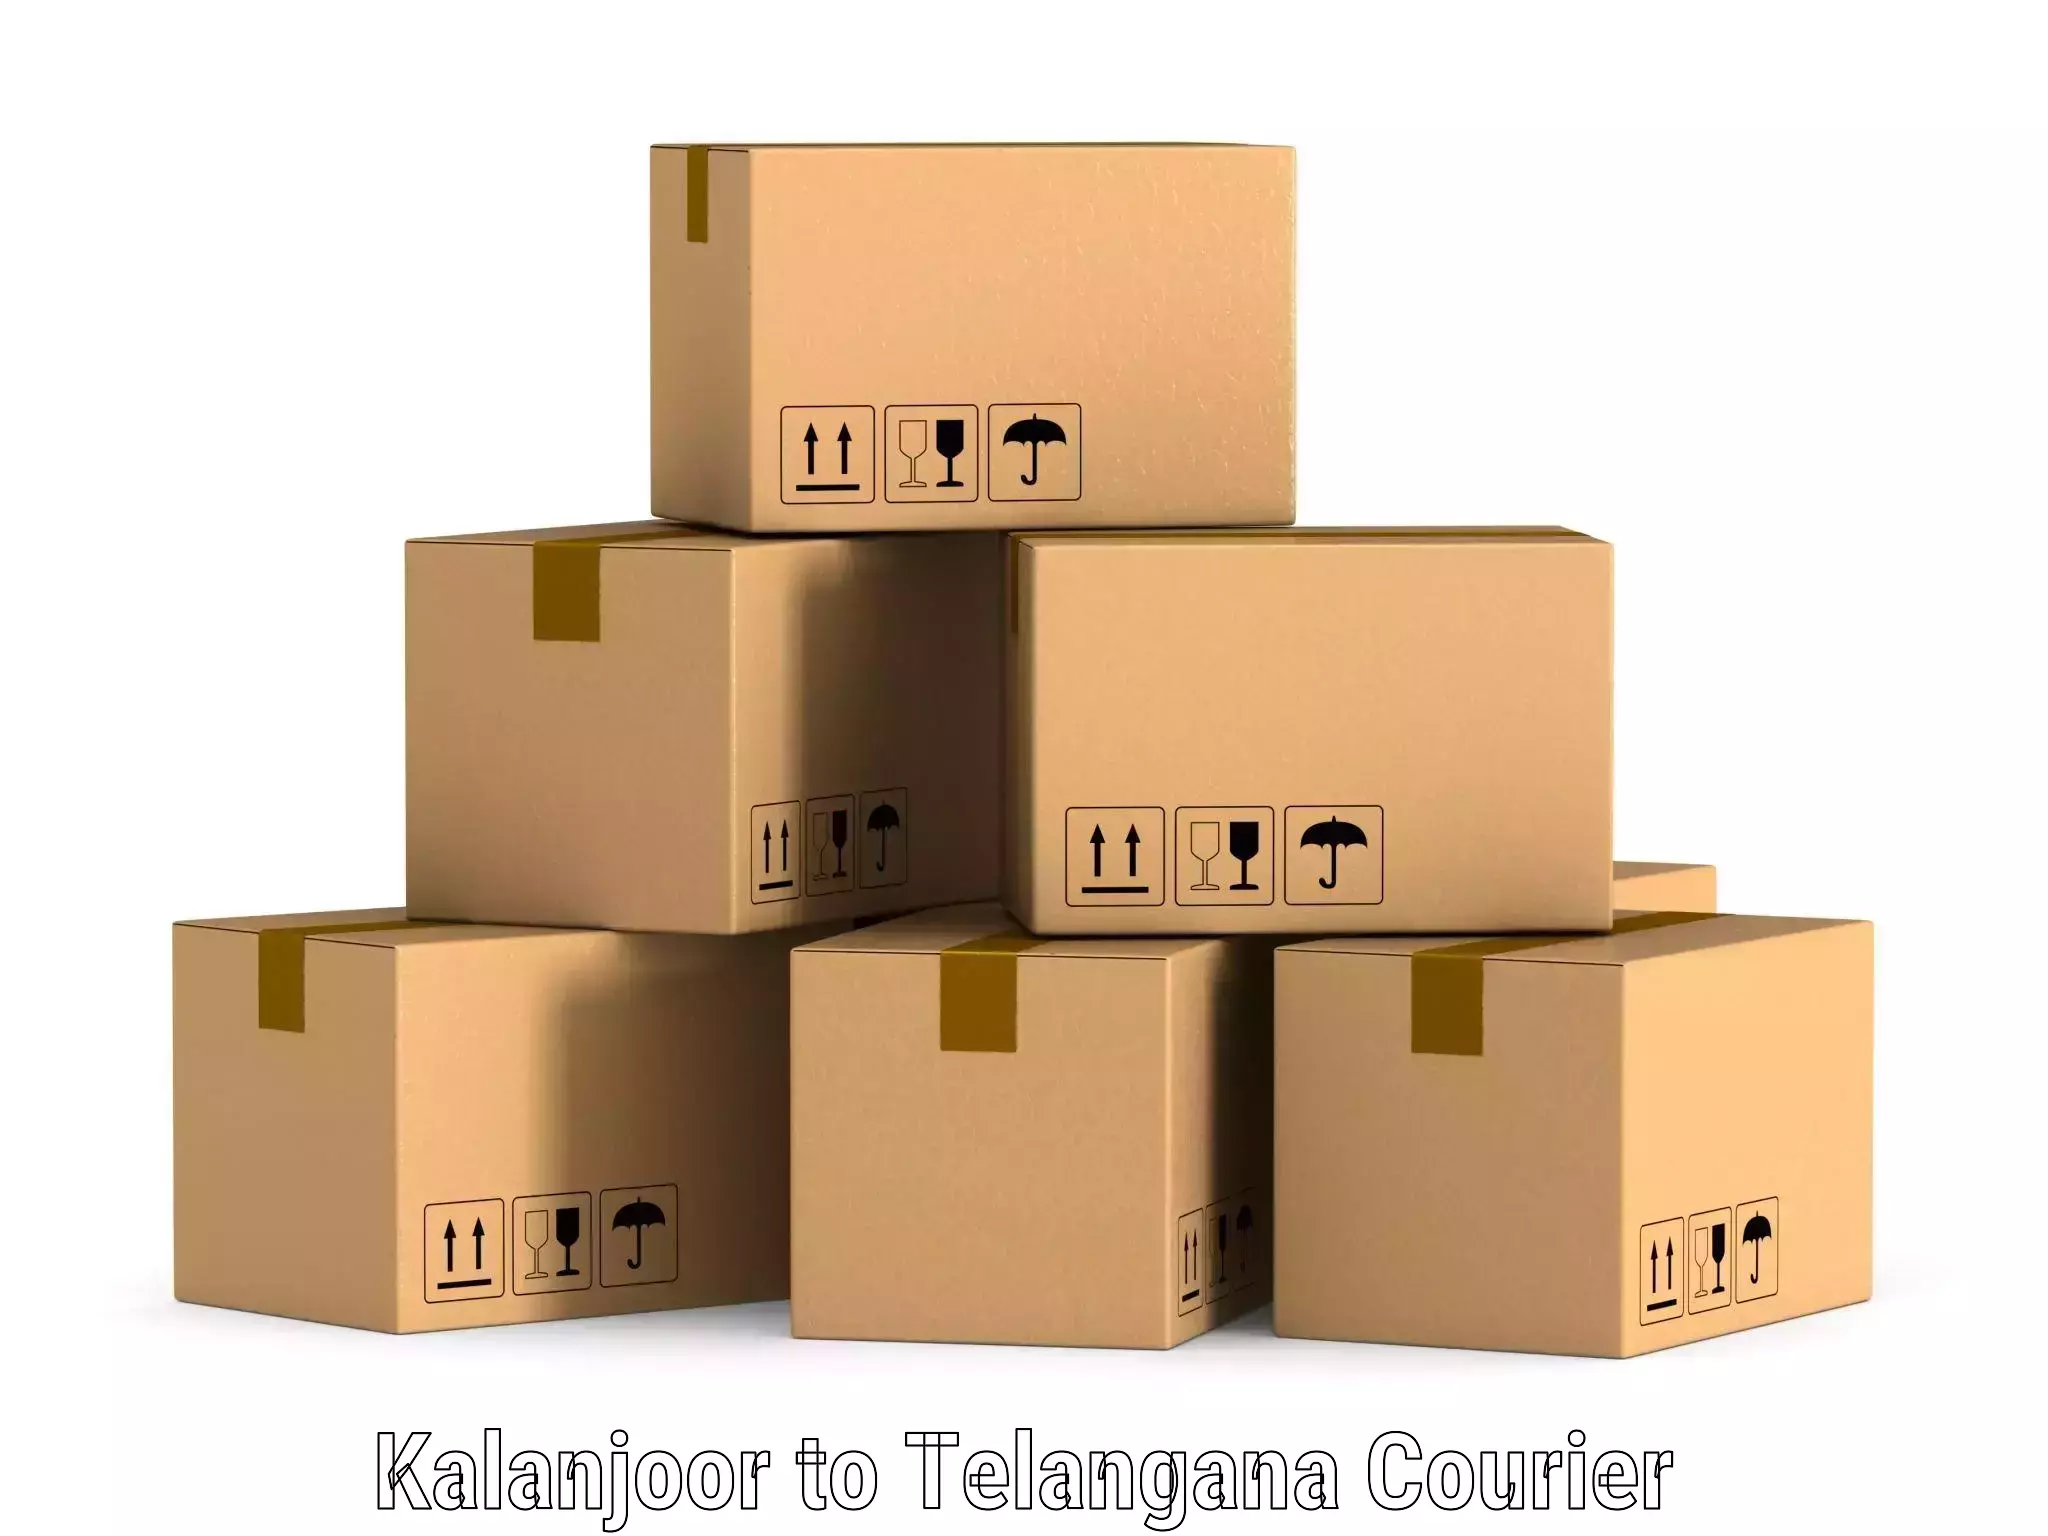 International courier rates Kalanjoor to Kadthal